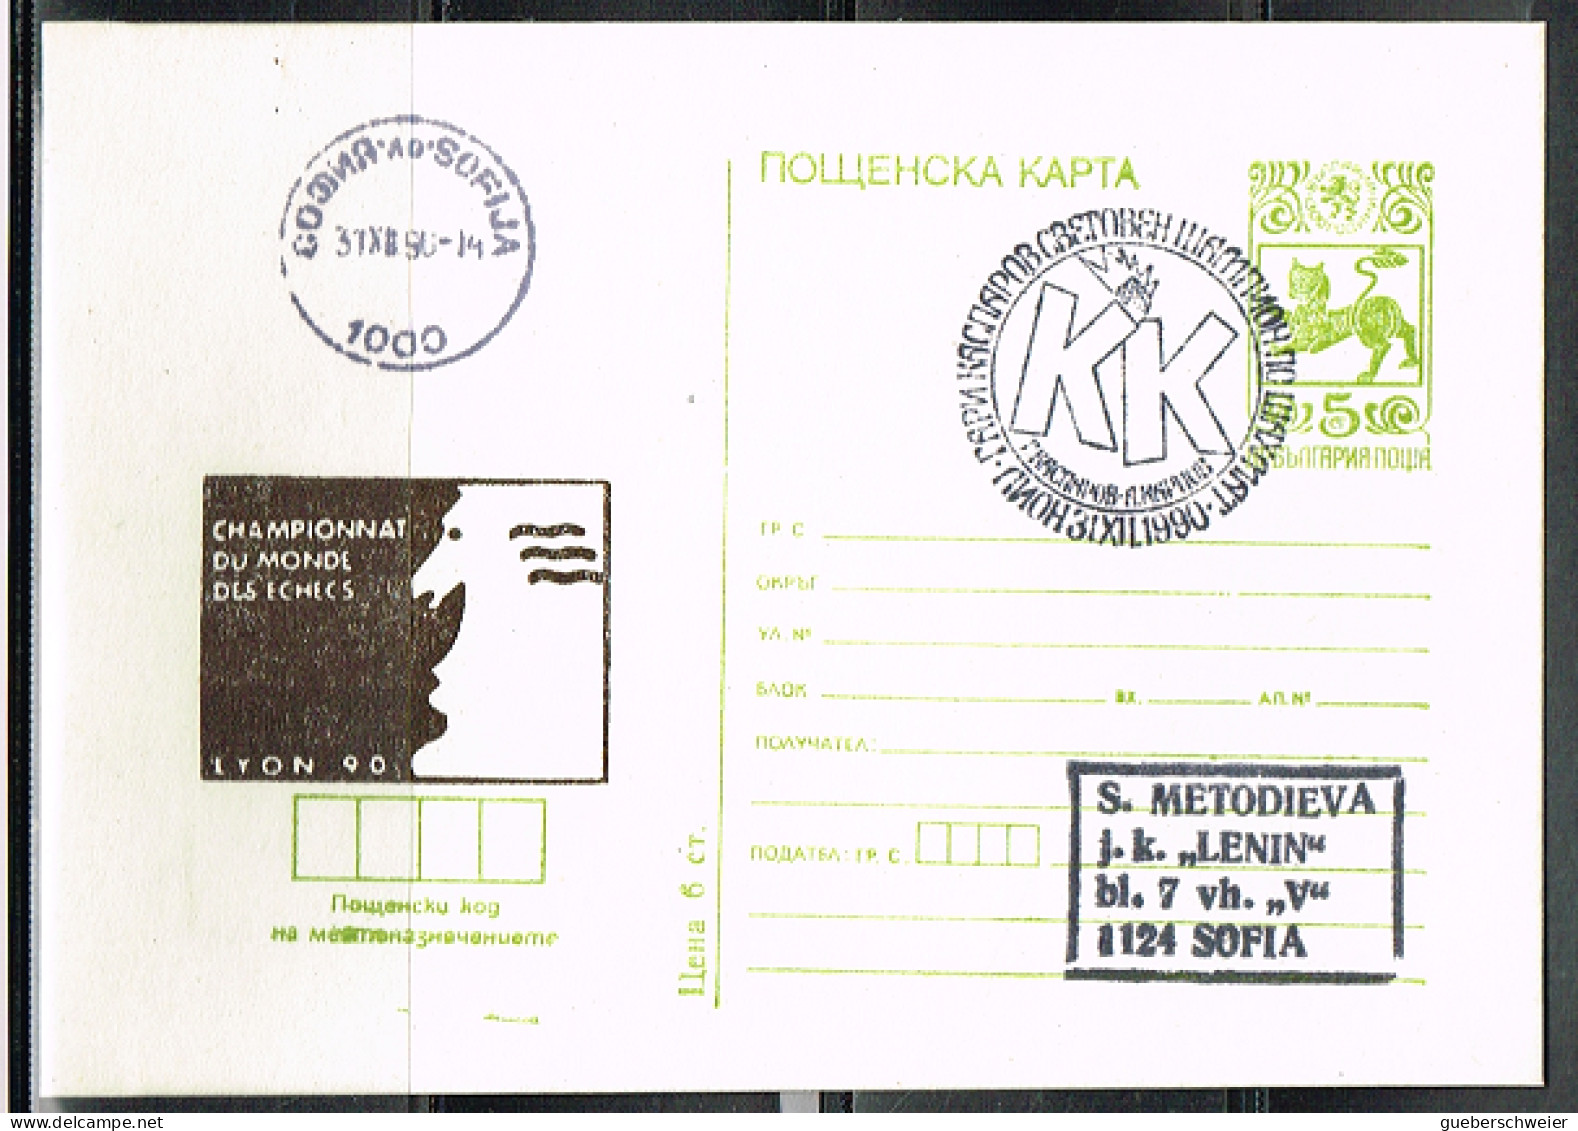 ECH L 25 - BULGARIE Entier Postal Illustré Championnat Du Monde D'Echecs  Lyon 1990 - Cartes Postales